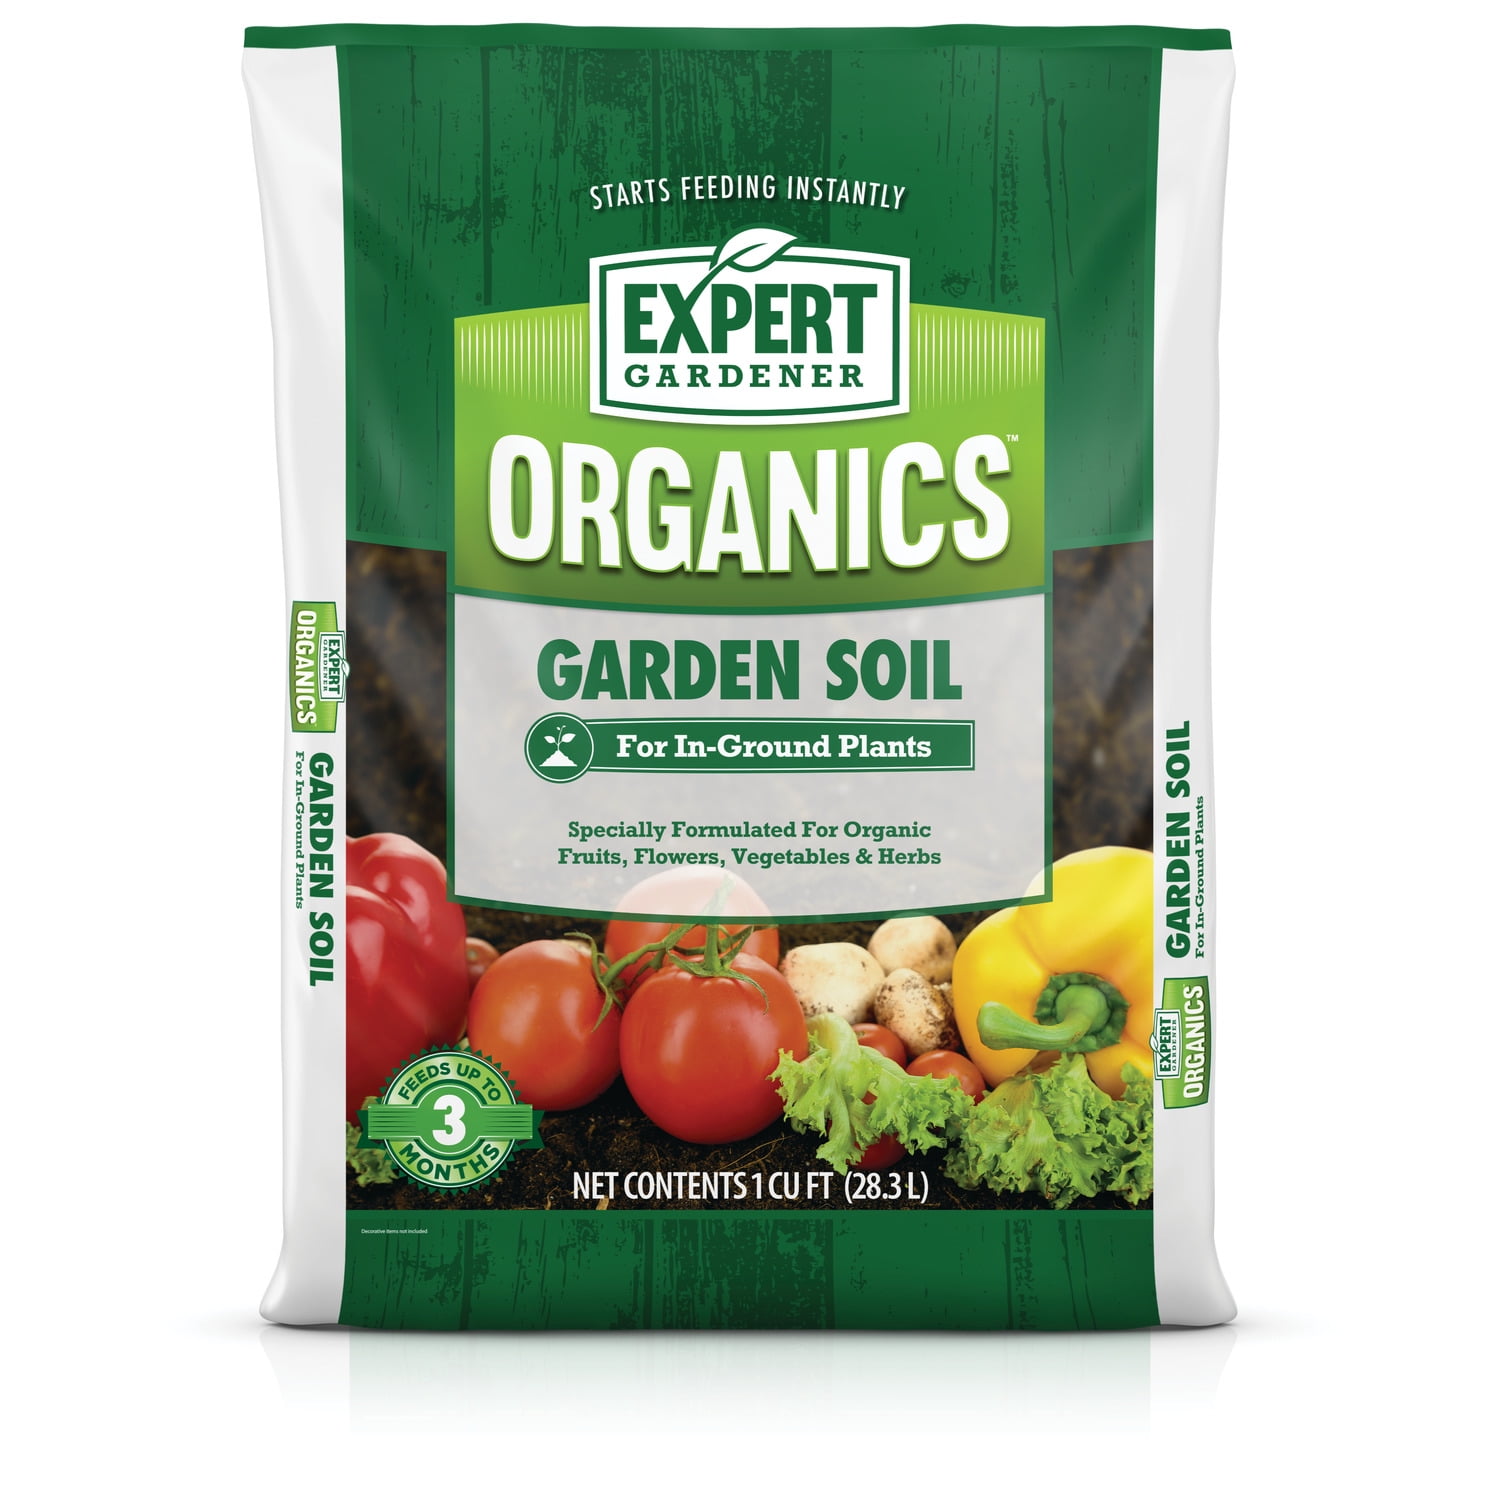 Expert Gardener Organics Garden Soil For In Ground Plants 1 Cu Ft